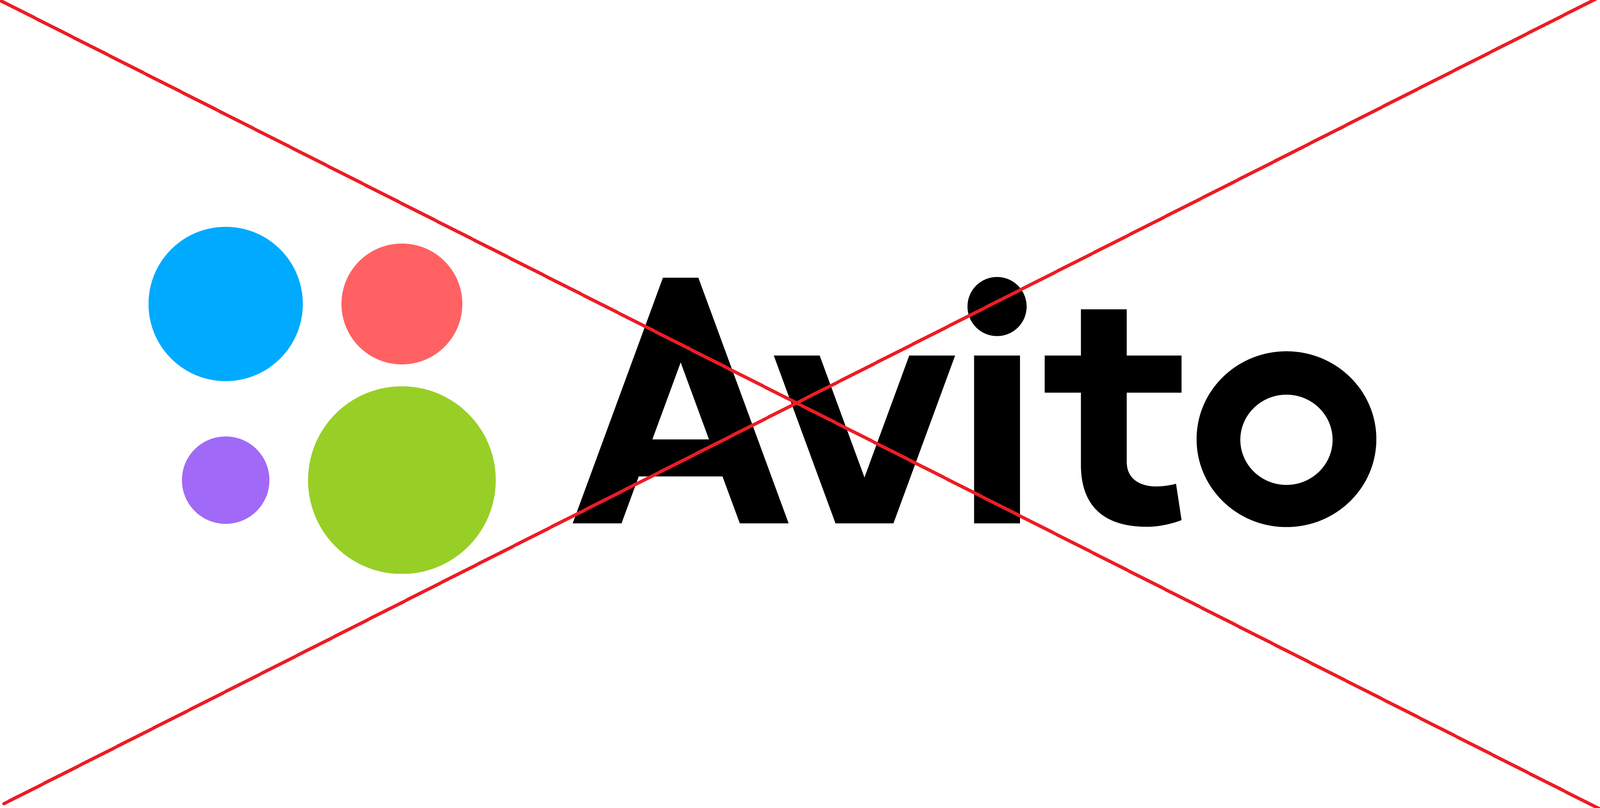 Авито арк. Avito эмблема. Avito логотип прозрачный. Логотип компании авито. Авито натпрозрачном фоне.